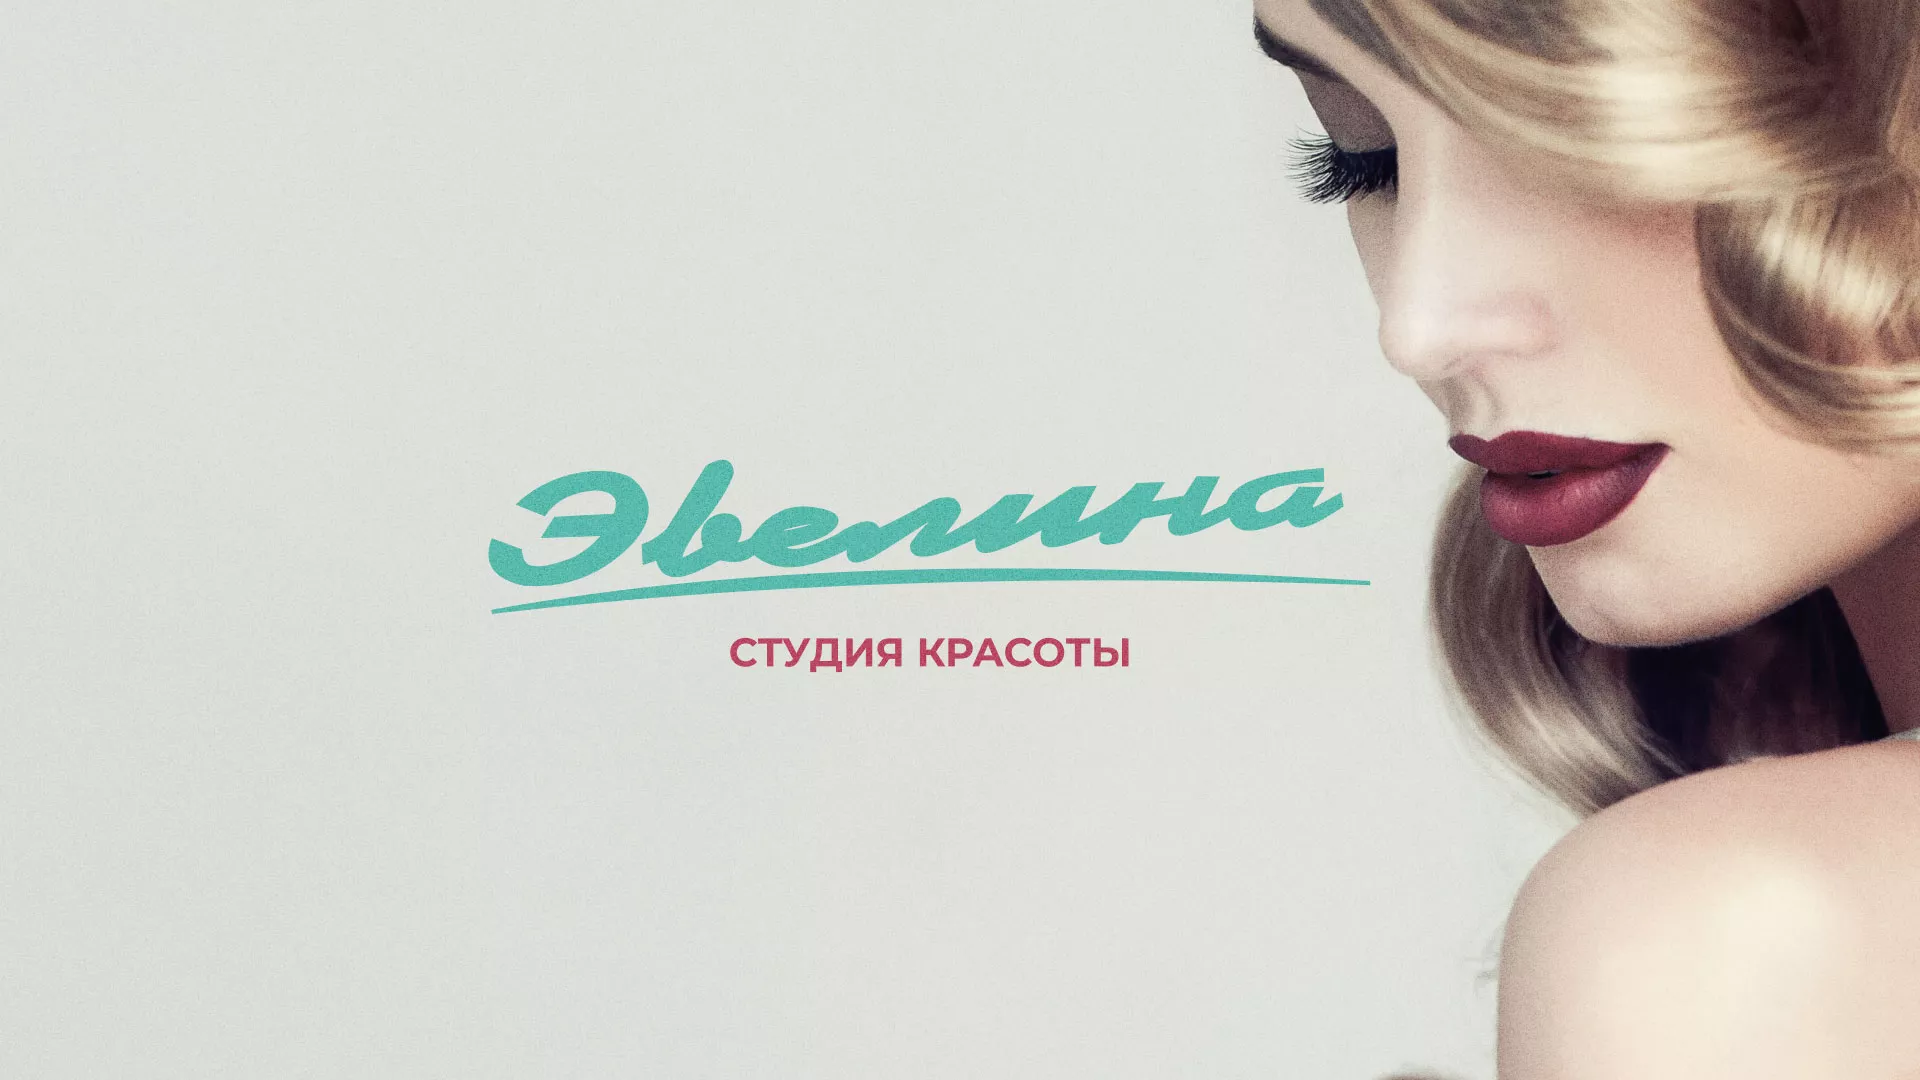 Разработка сайта для салона красоты «Эвелина» в Черняховске